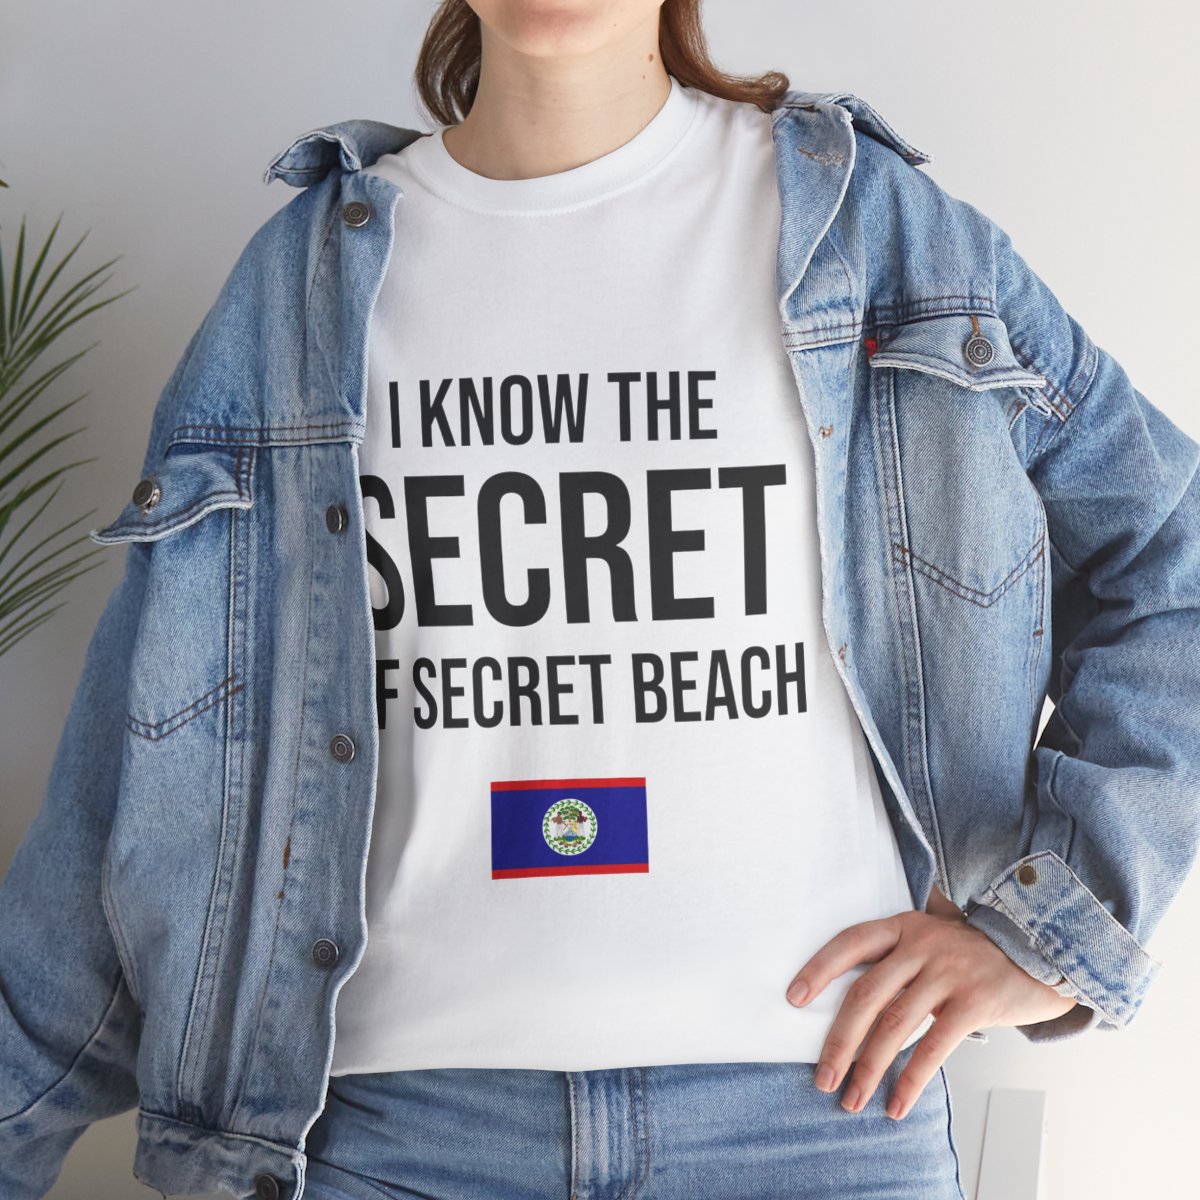 I Know The Secret Unisex Tshirt product thumbnail image